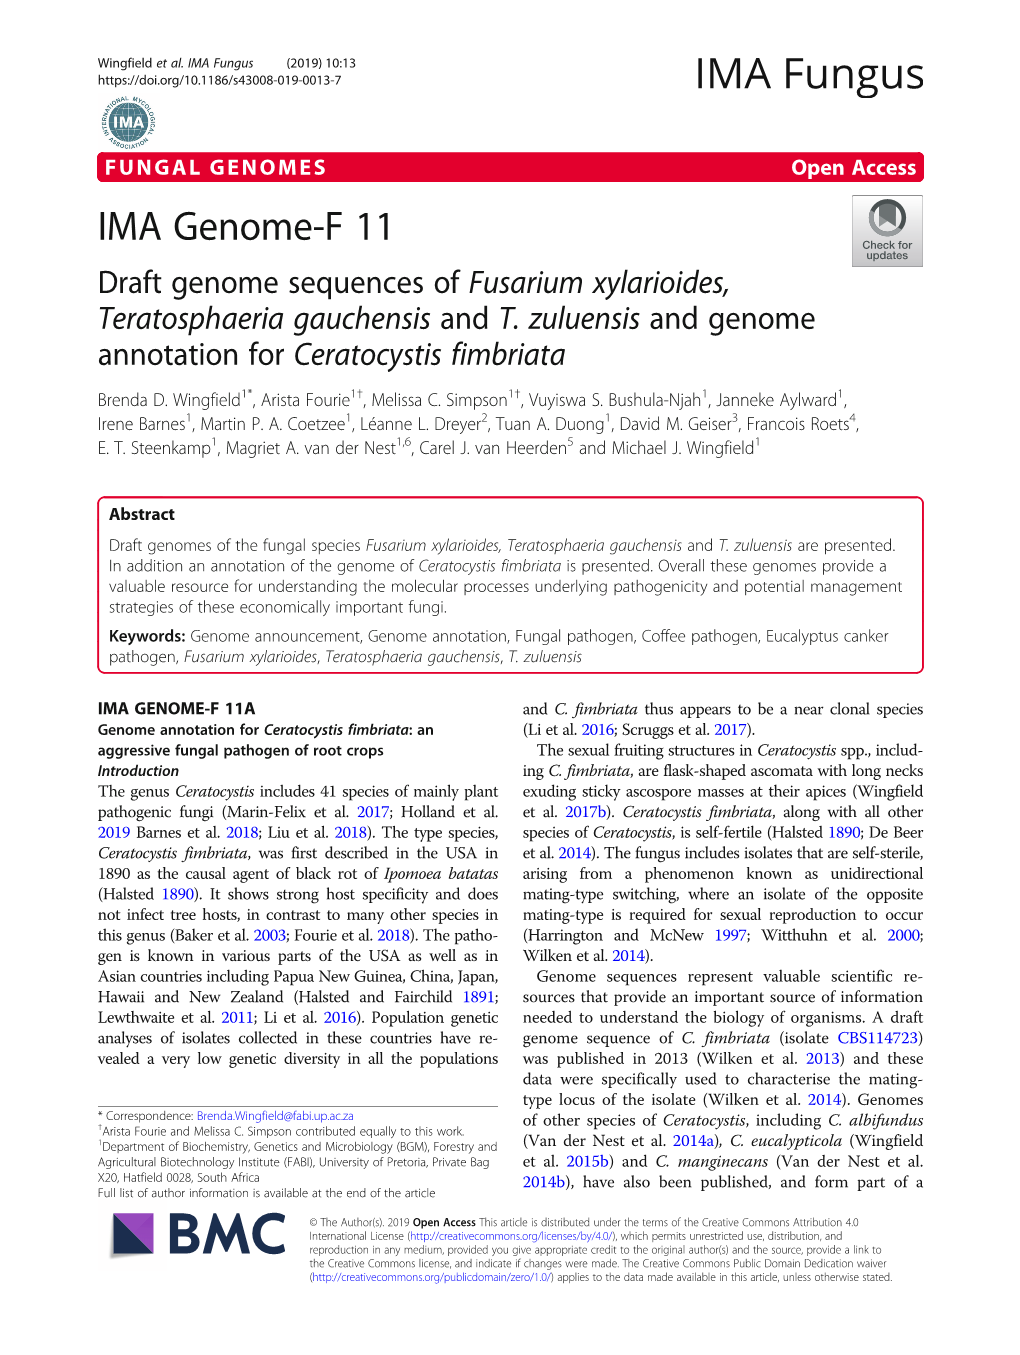 IMA Genome-F 11 Draft Genome Sequences of Fusarium Xylarioides, Teratosphaeria Gauchensis and T